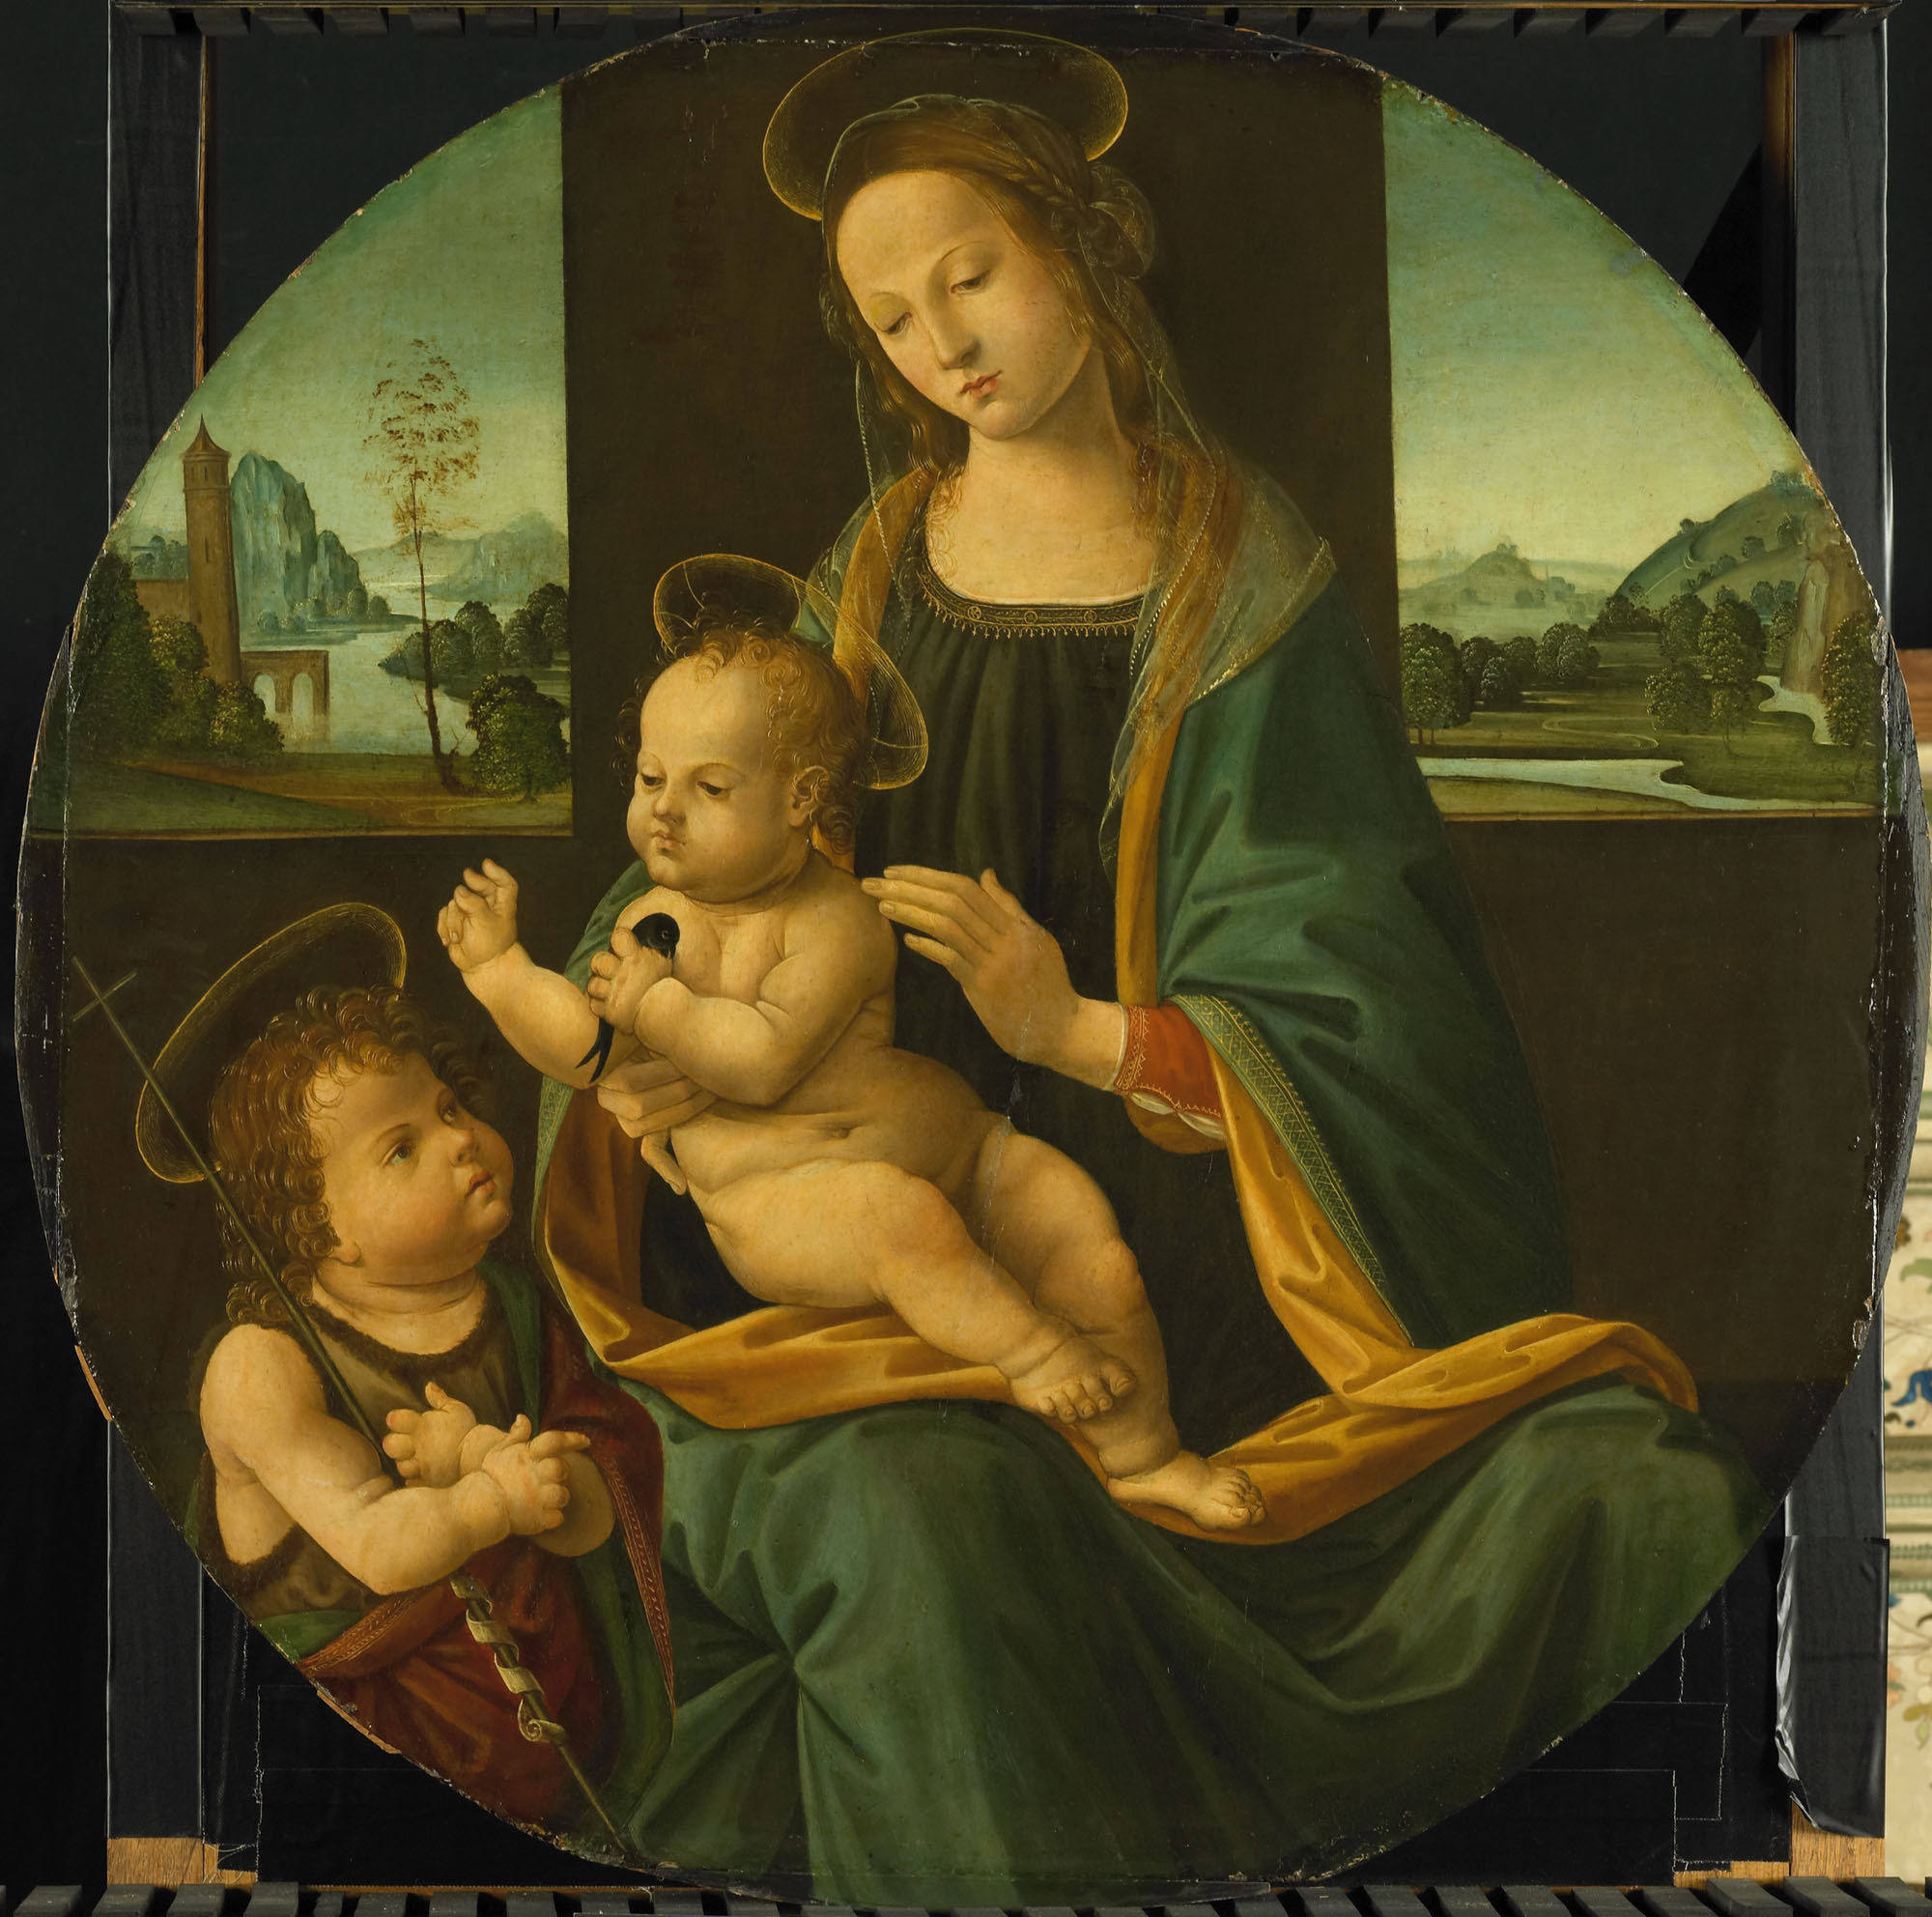 Автор картины мадонна с младенцем. Мадонна с младенцем и Иоанном Крестителем. Мадонна с младенцем и маленьким Иоанном Крестителем (1509-1510). «Мадонна с веретеном» (1507). Леонардо да Винчи. Мадонна с младенцем или «Мадонна Литта».